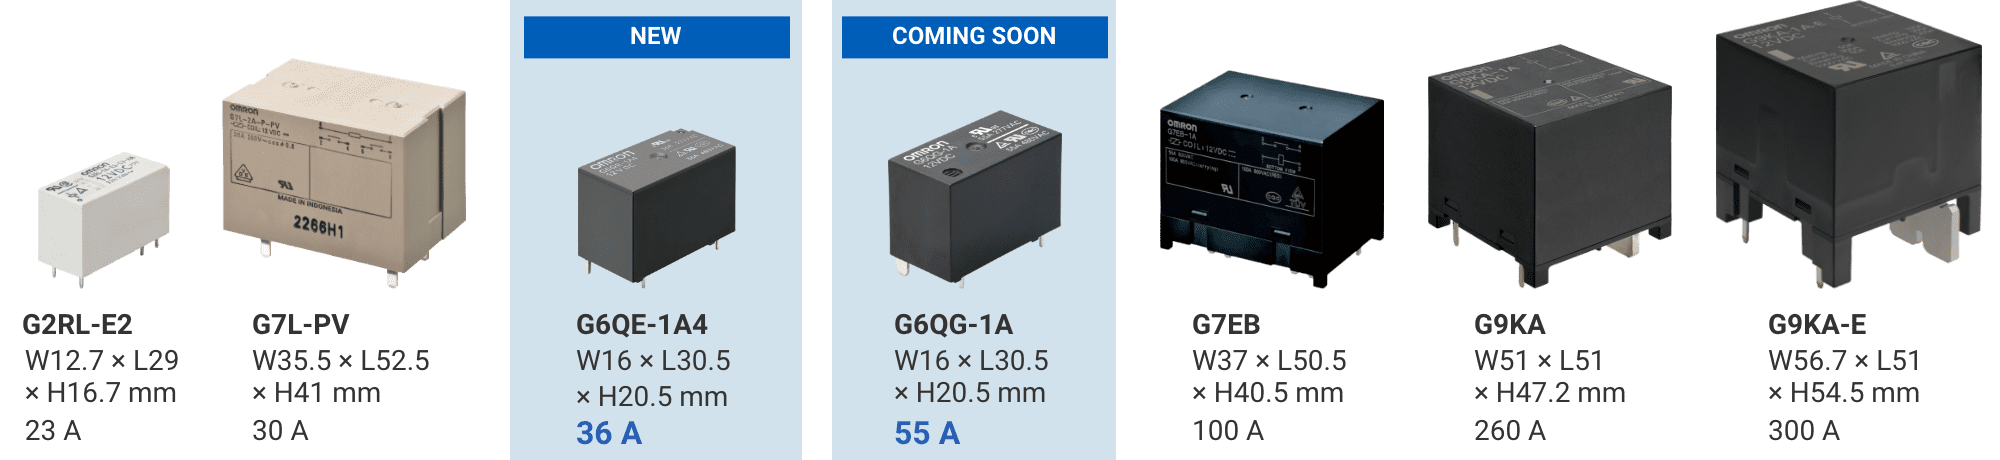 G2RL-E2: W12.7×L29×H16.7mm 23A/G7L-PV: W35.5×L52.5×H41mm 30A/(NEW)G6QE-1A4: W16×L30.5×H20.5mm 36A/(COMING SOON)G6QG-1A: W16×L30.5×H20.5mm 55A/G7EB: W37×L50.5×H40.5mm 100A/G9KA: W51×L51×H47.2mm 260A/G9KA-E: W56.7×L51×H54.5mm 300A